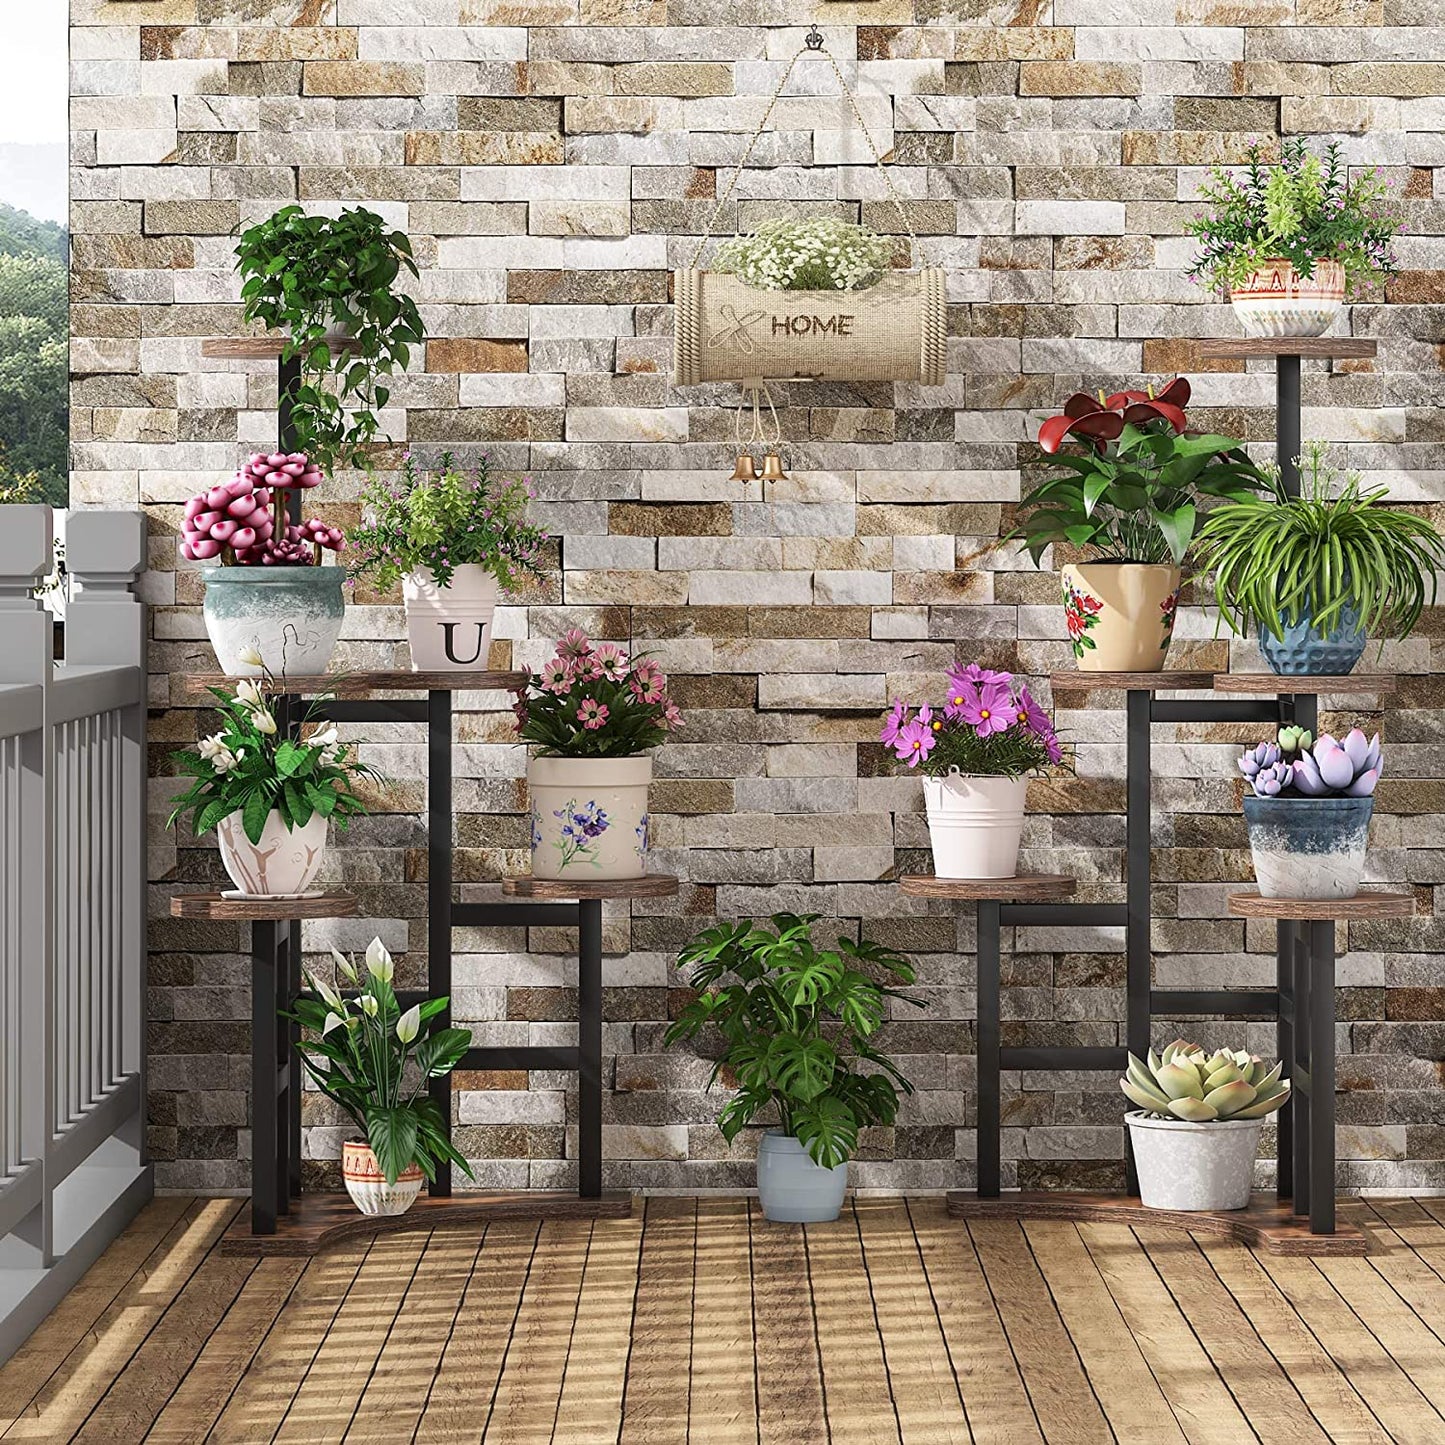 Tribesigns - Supporto per piante ad angolo interno, 6 ripiani per piante a più livelli, alto supporto per piante in vaso multiplo, marrone